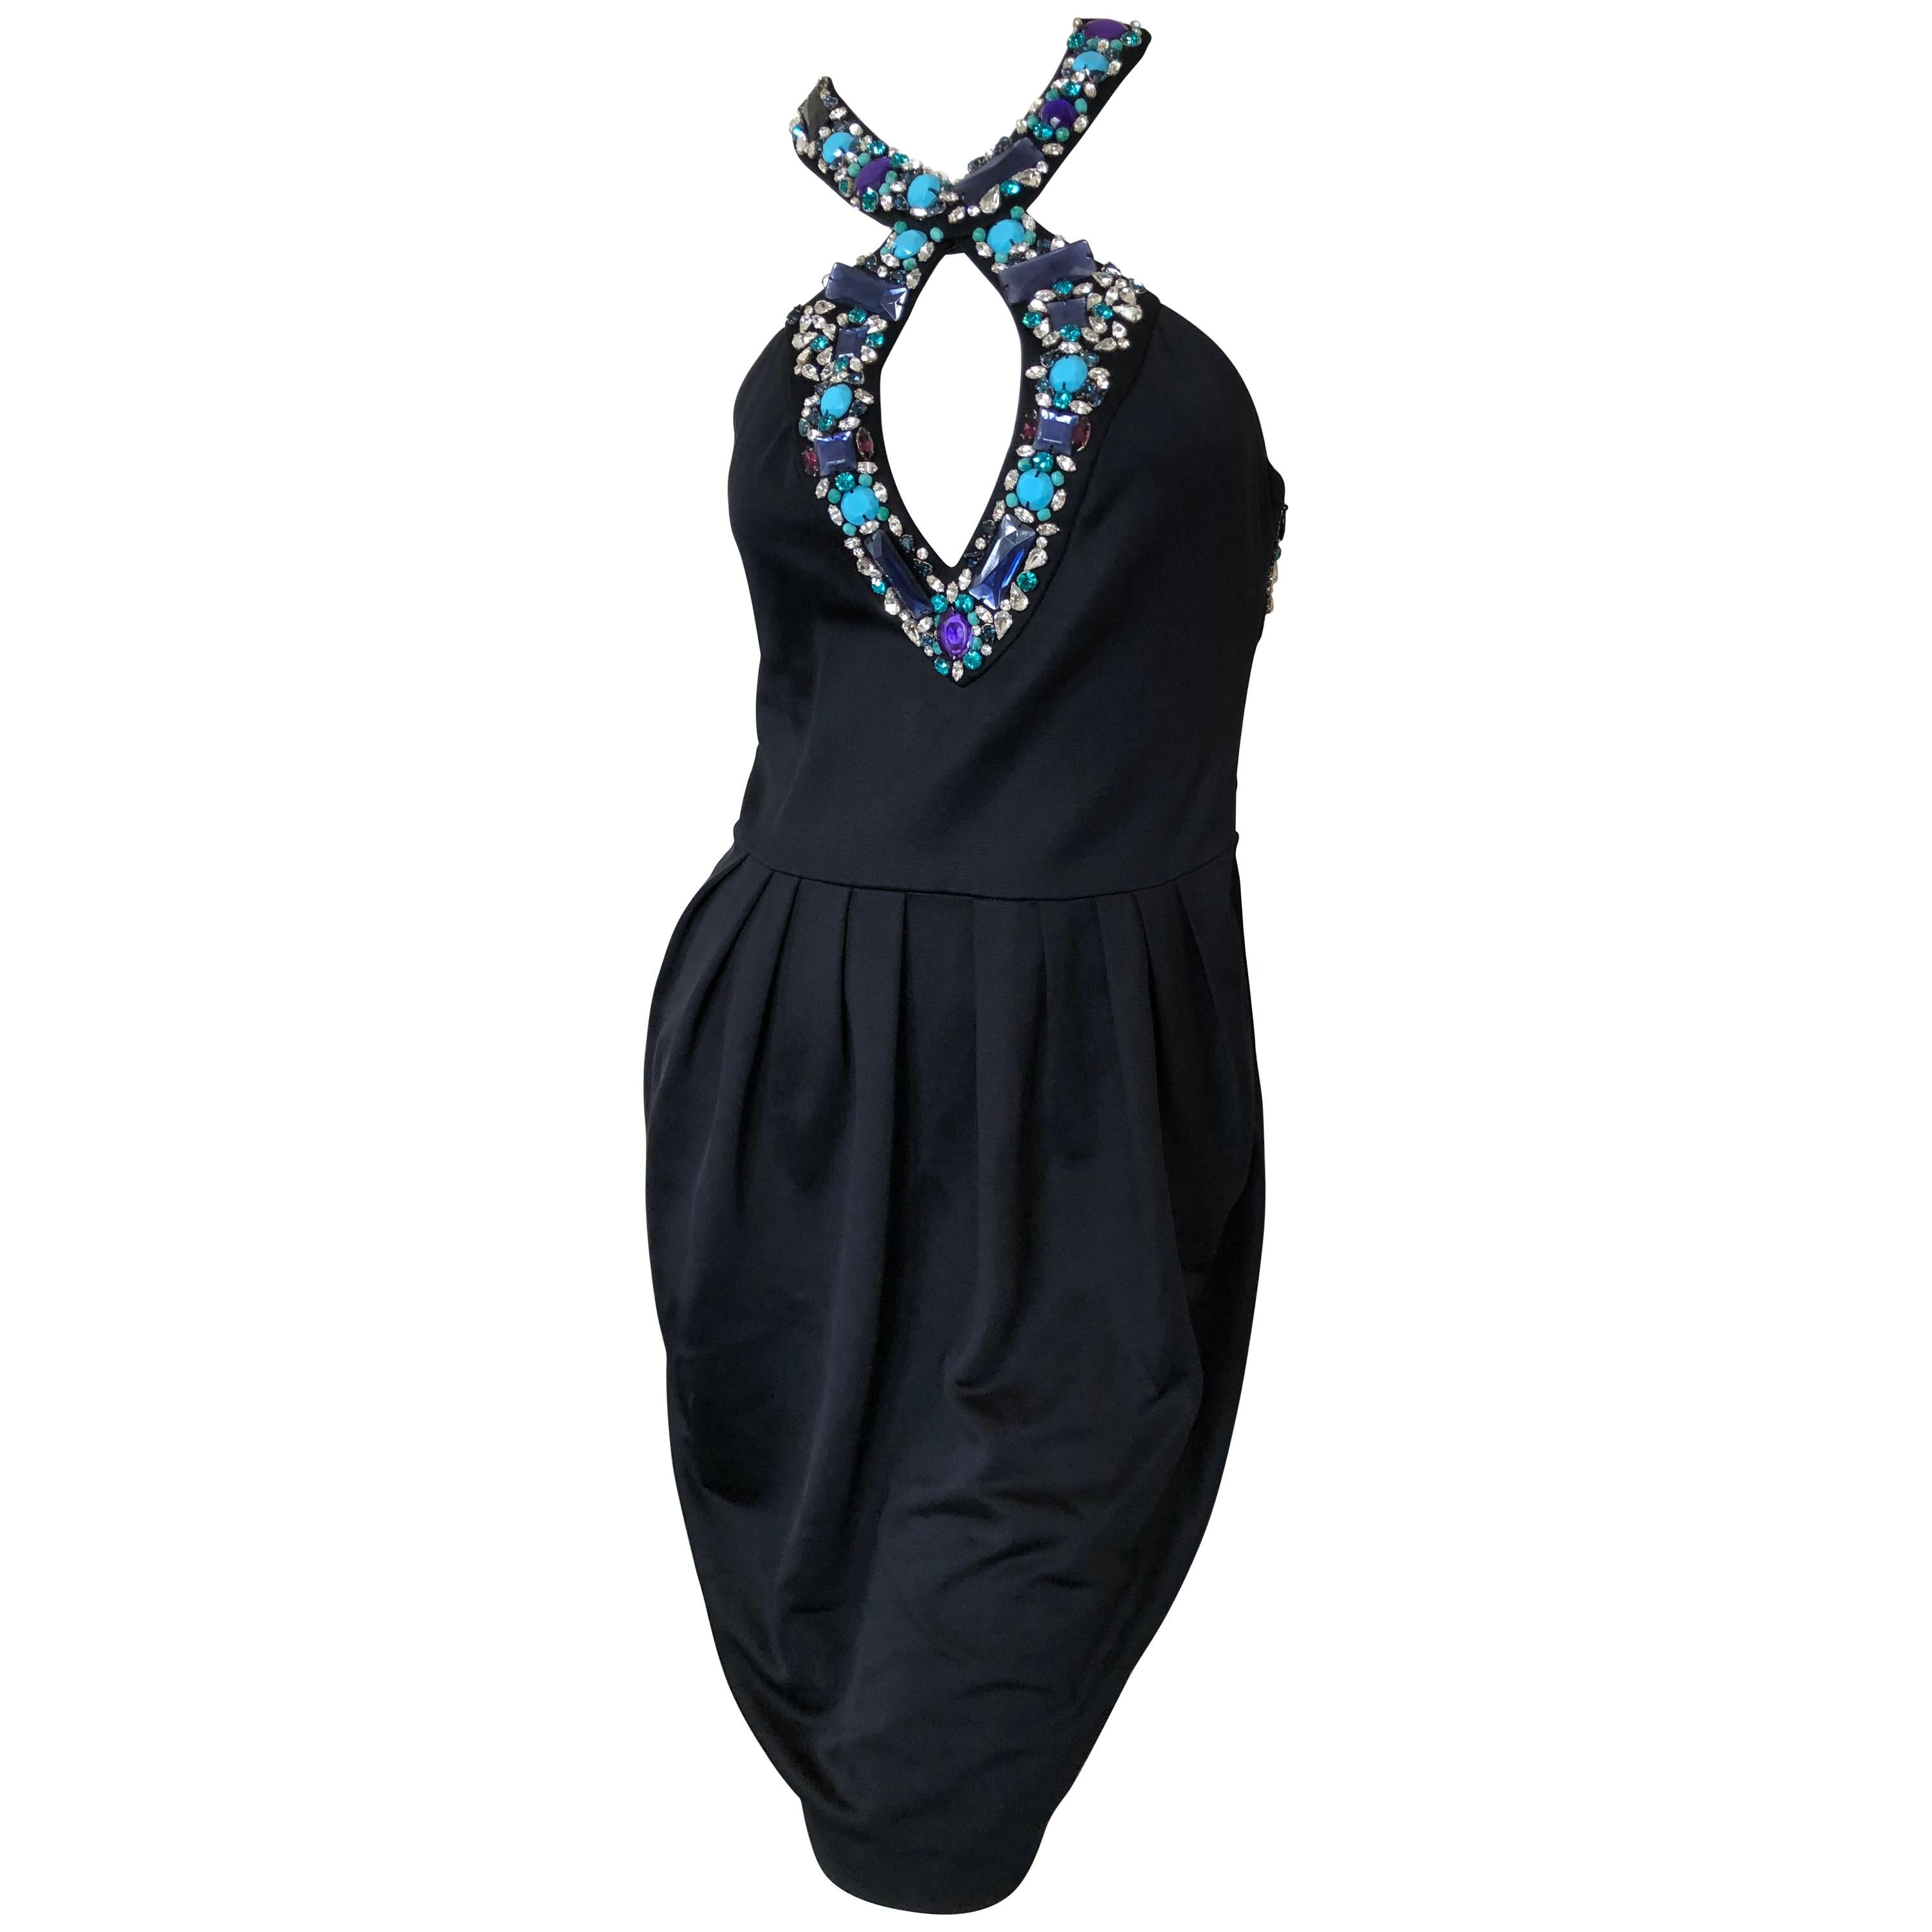 Emilio Pucci Lacroix Era Little Black Dress w Gobsmacking Jewel Embellishments For Sale